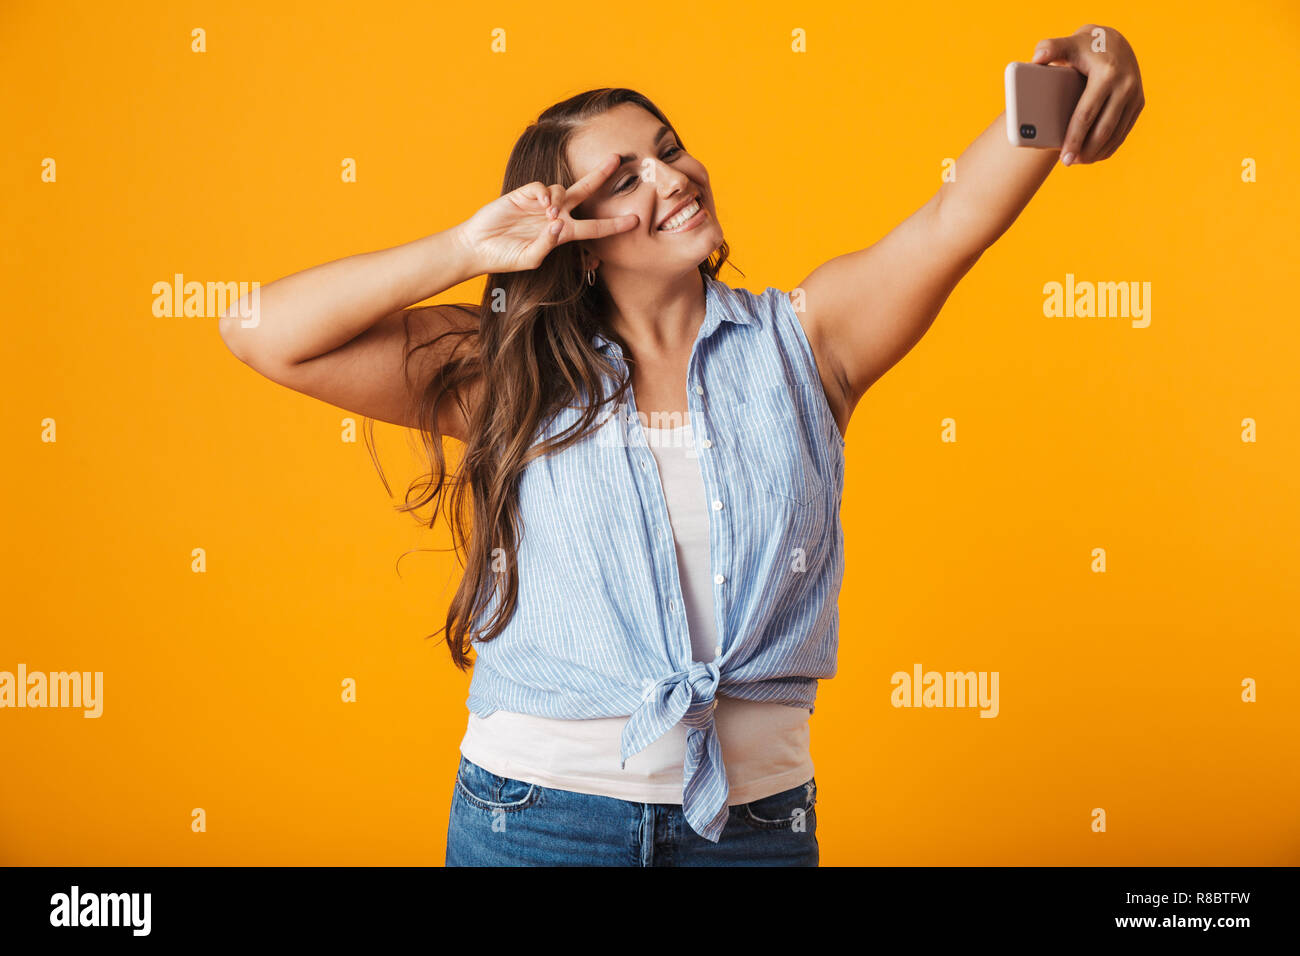 Allegro giovane donna in piedi isolato su sfondo giallo, prendendo un selfie con mano outsretched Foto Stock